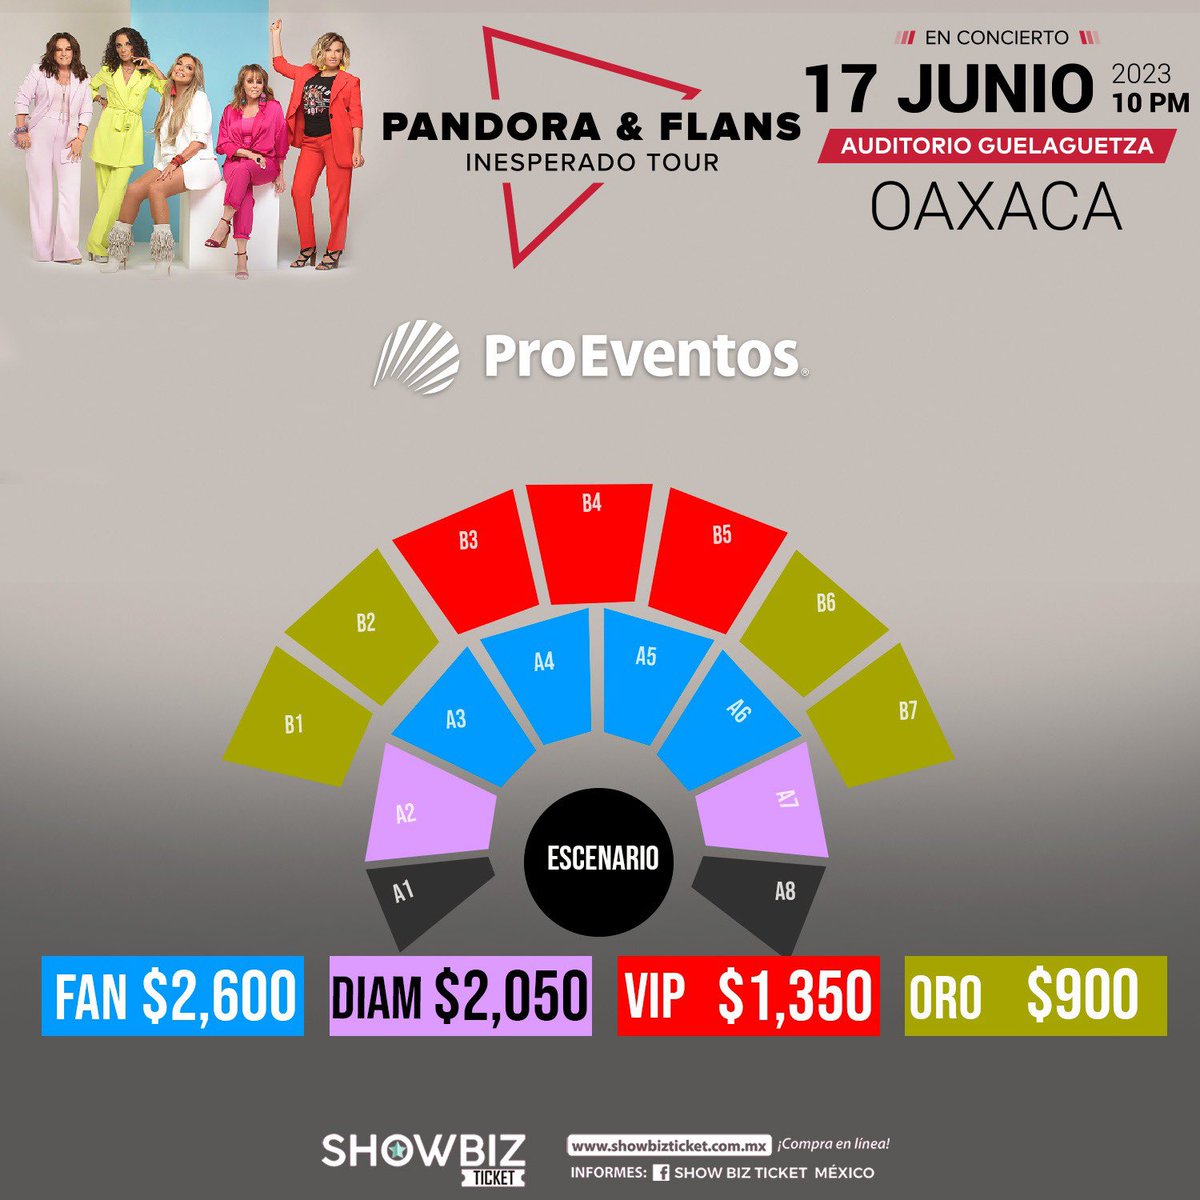 #Pandora Y #Flans juntas por primera vez en #Oaxaca #Eventos2023 #AuditorioGuelaguetza 
#ShowBitzTickets #ProEventos 
🖖💫✌🏻